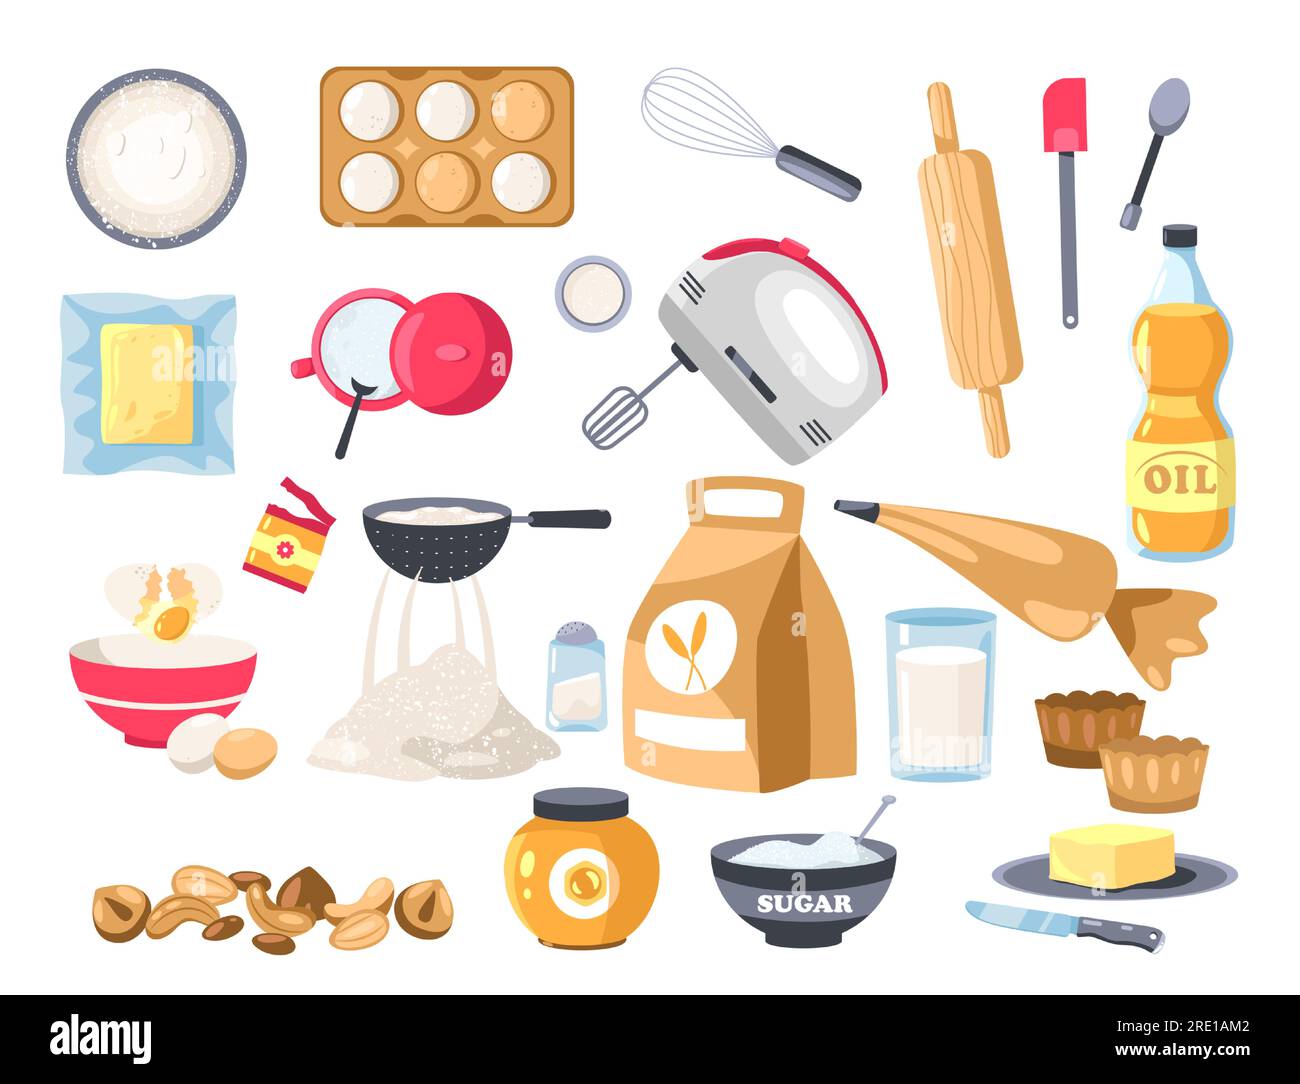 Backzubereitungen. Cartoon-Mehl, Zucker und Eier mit Utensilien zum Backen von Desserts, flaches Verpackungsdesign für Lebensmittel. Vektor-Essensset Stock Vektor